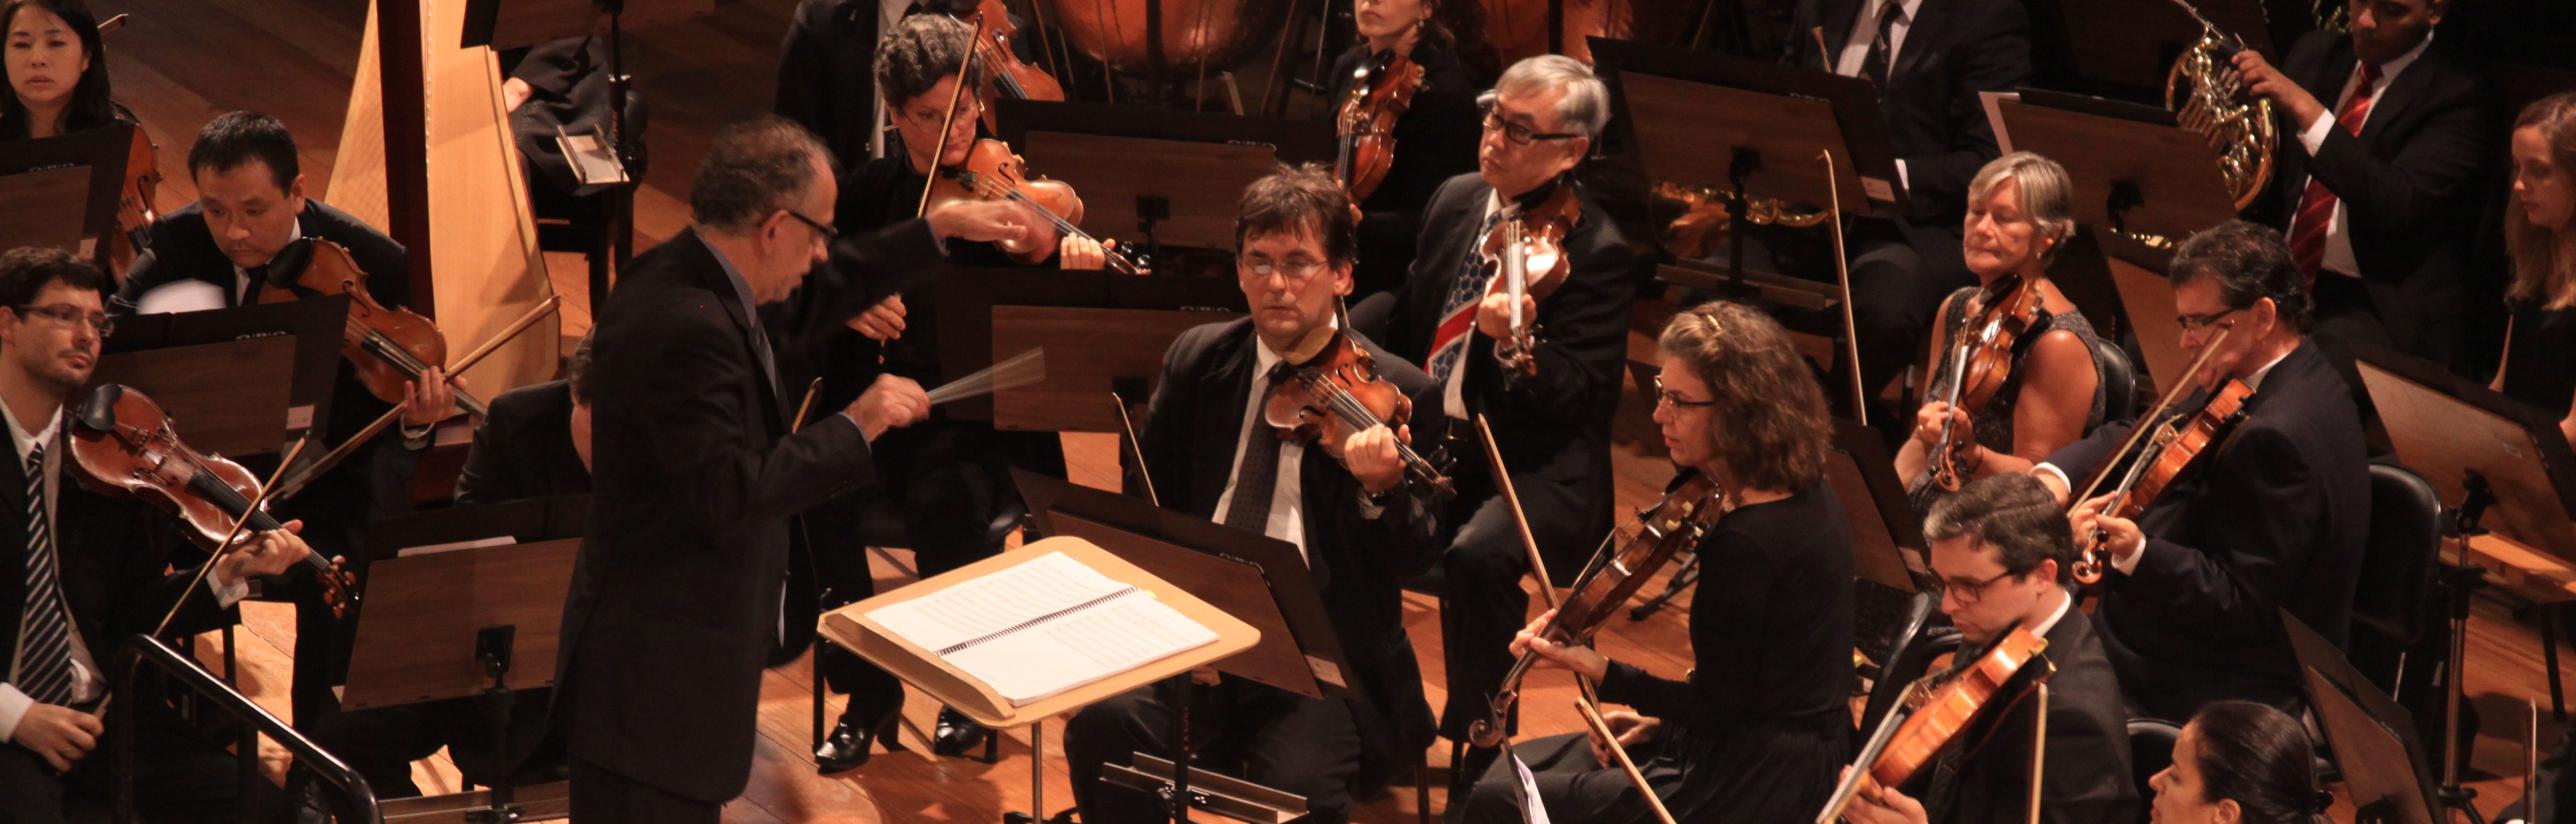 Nova temporada da Orquestra Sinfônica da USP traz convidados internacionais e repertório que mescla o inovador com o consagrado